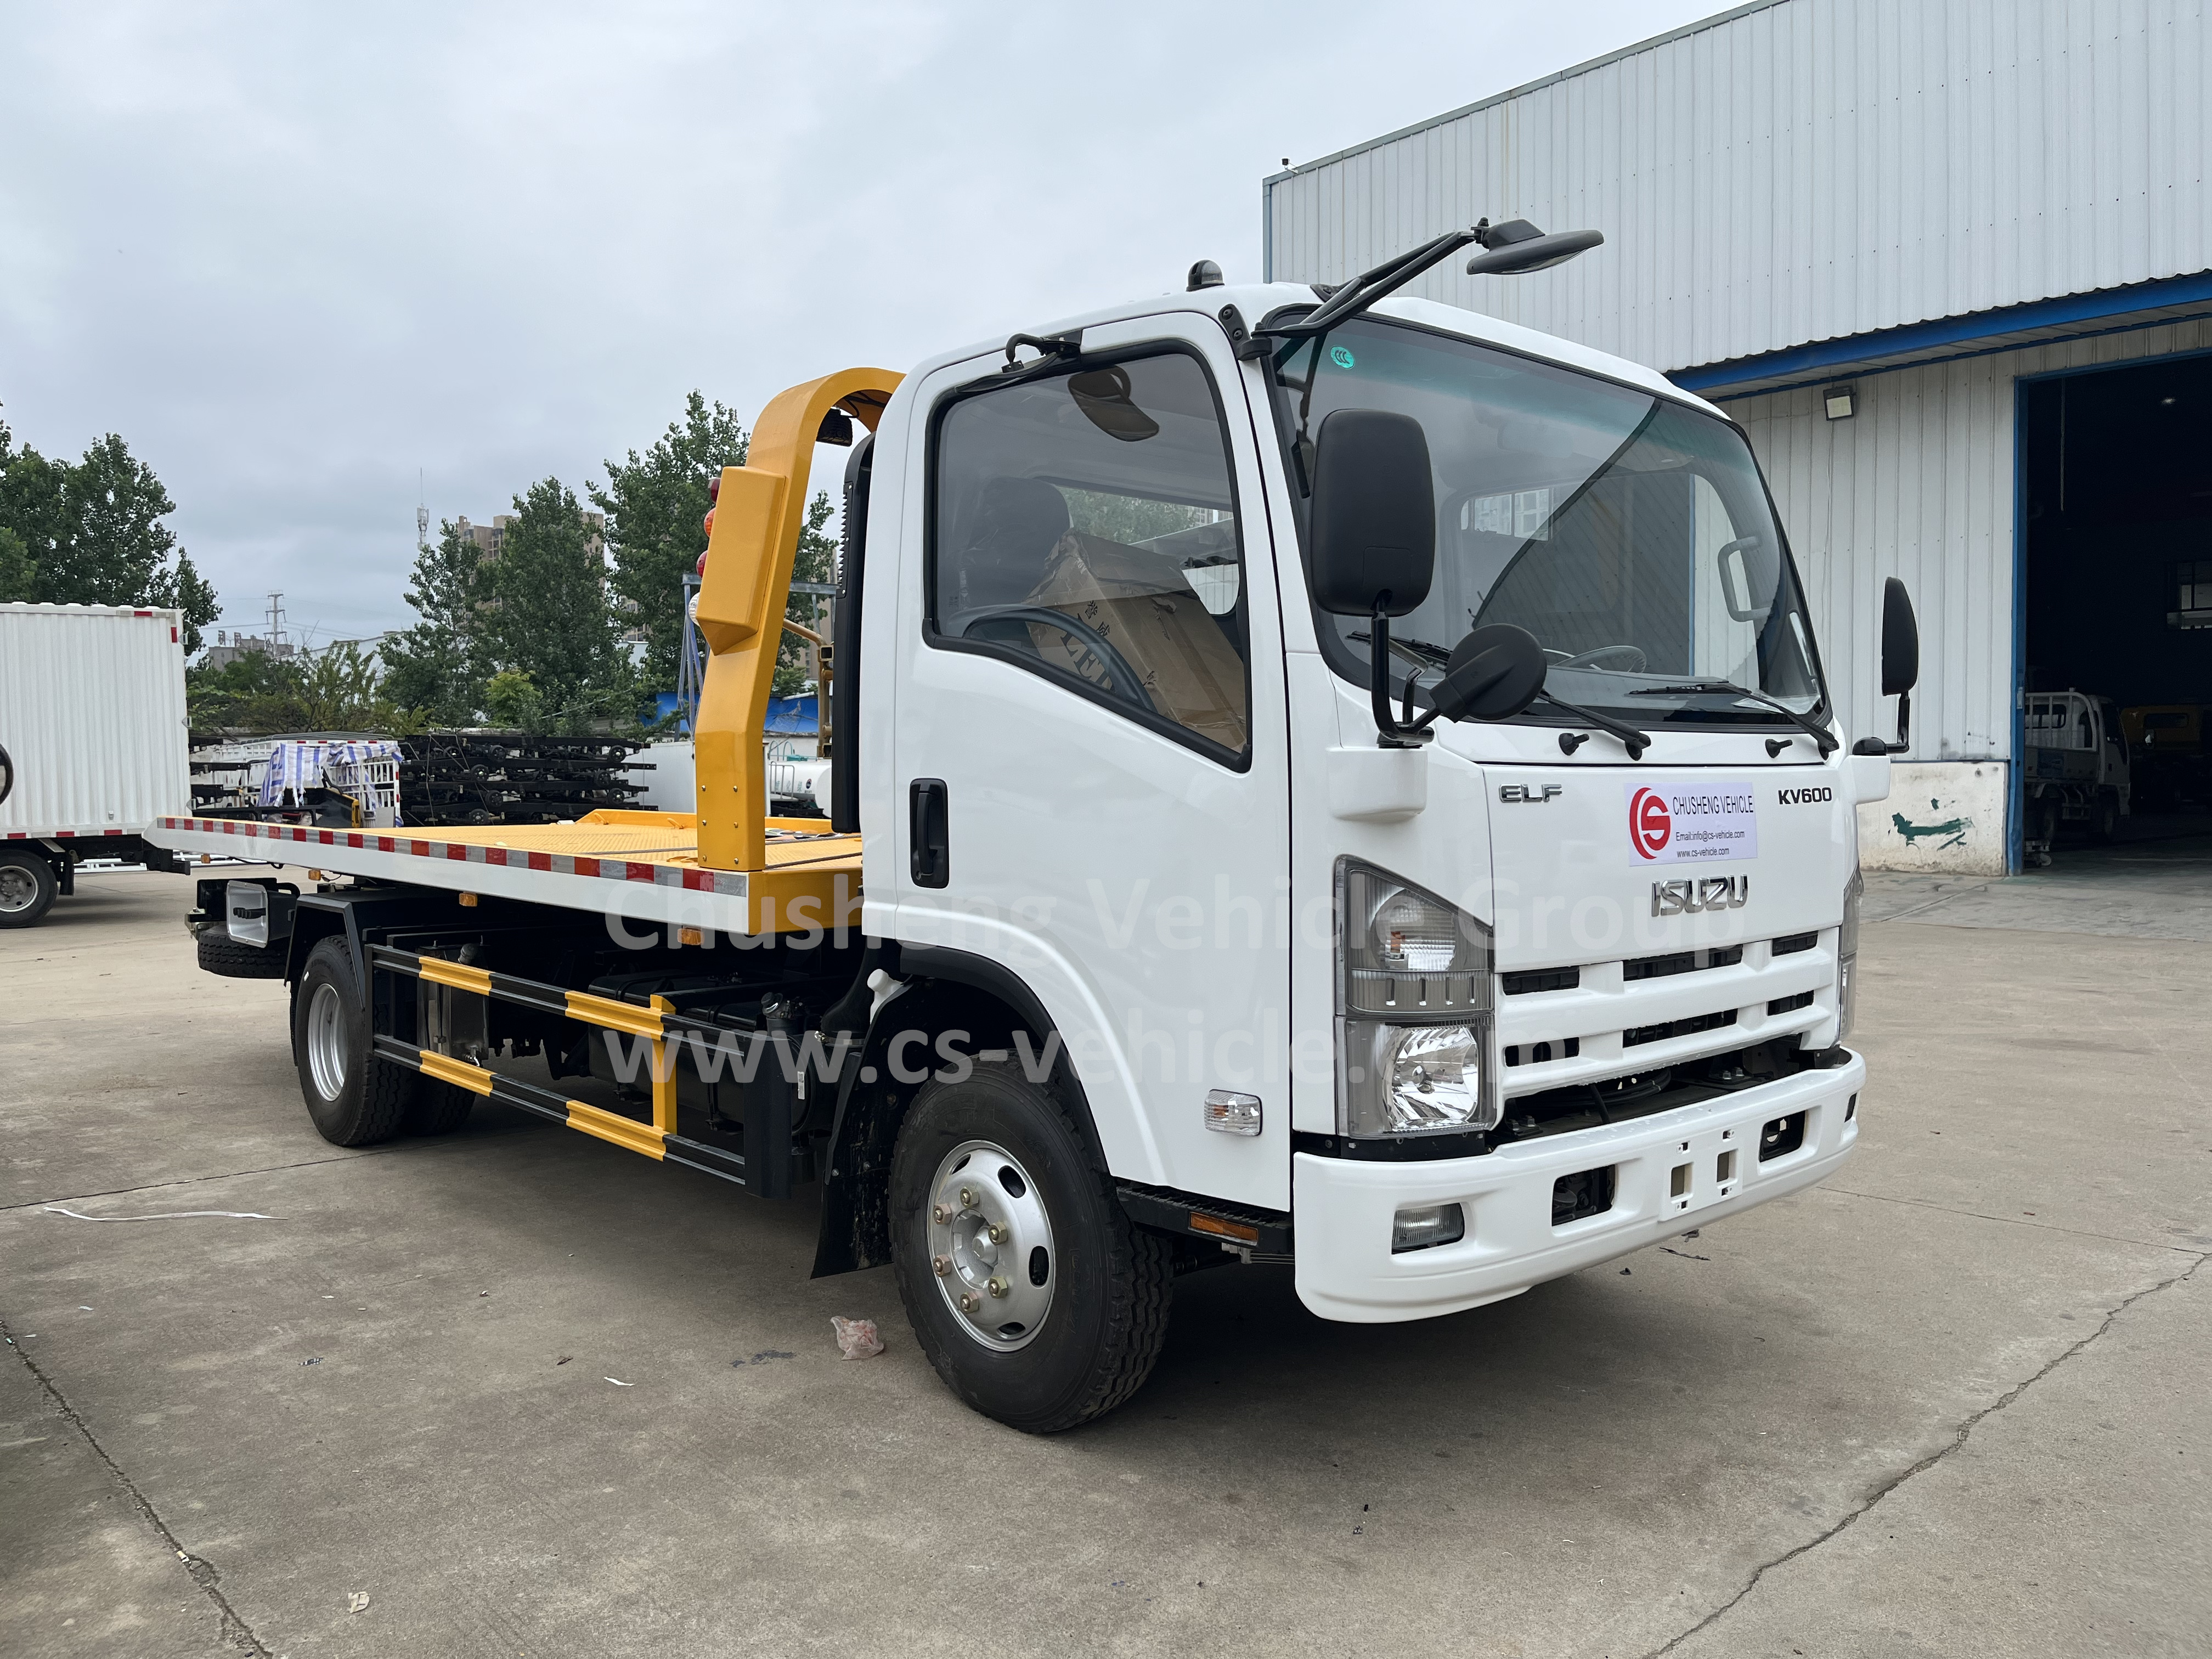 Isuzu 4x2 flatbed towing truck (1)